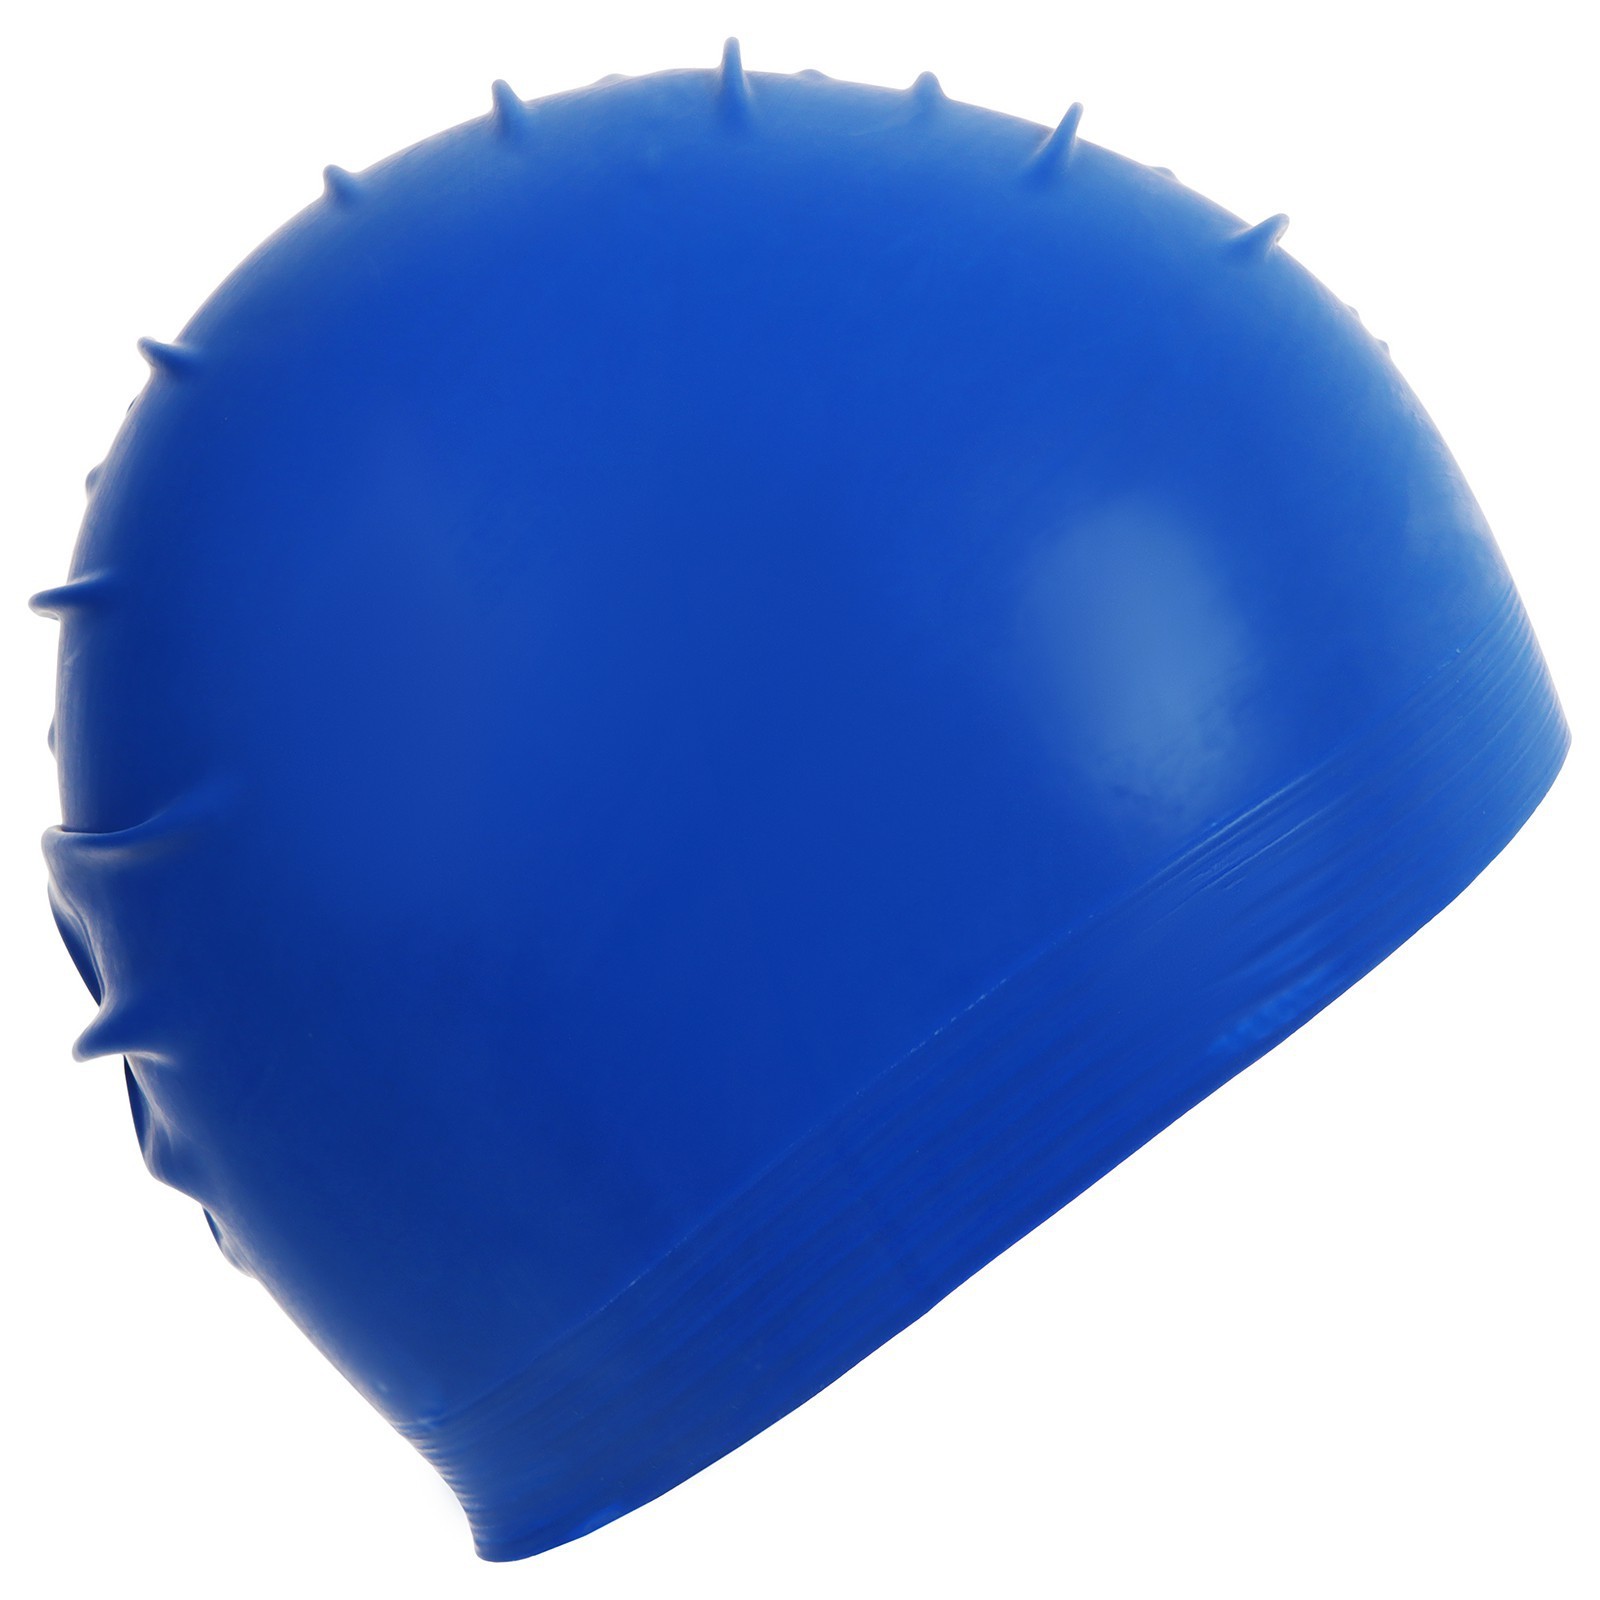 Купить резиновую шапочку. Шапочка резиновая для плавания Arena синяя. Резиновые шапочки для бассейна. Резиновая шапка для плавания. Шапочка для купания.